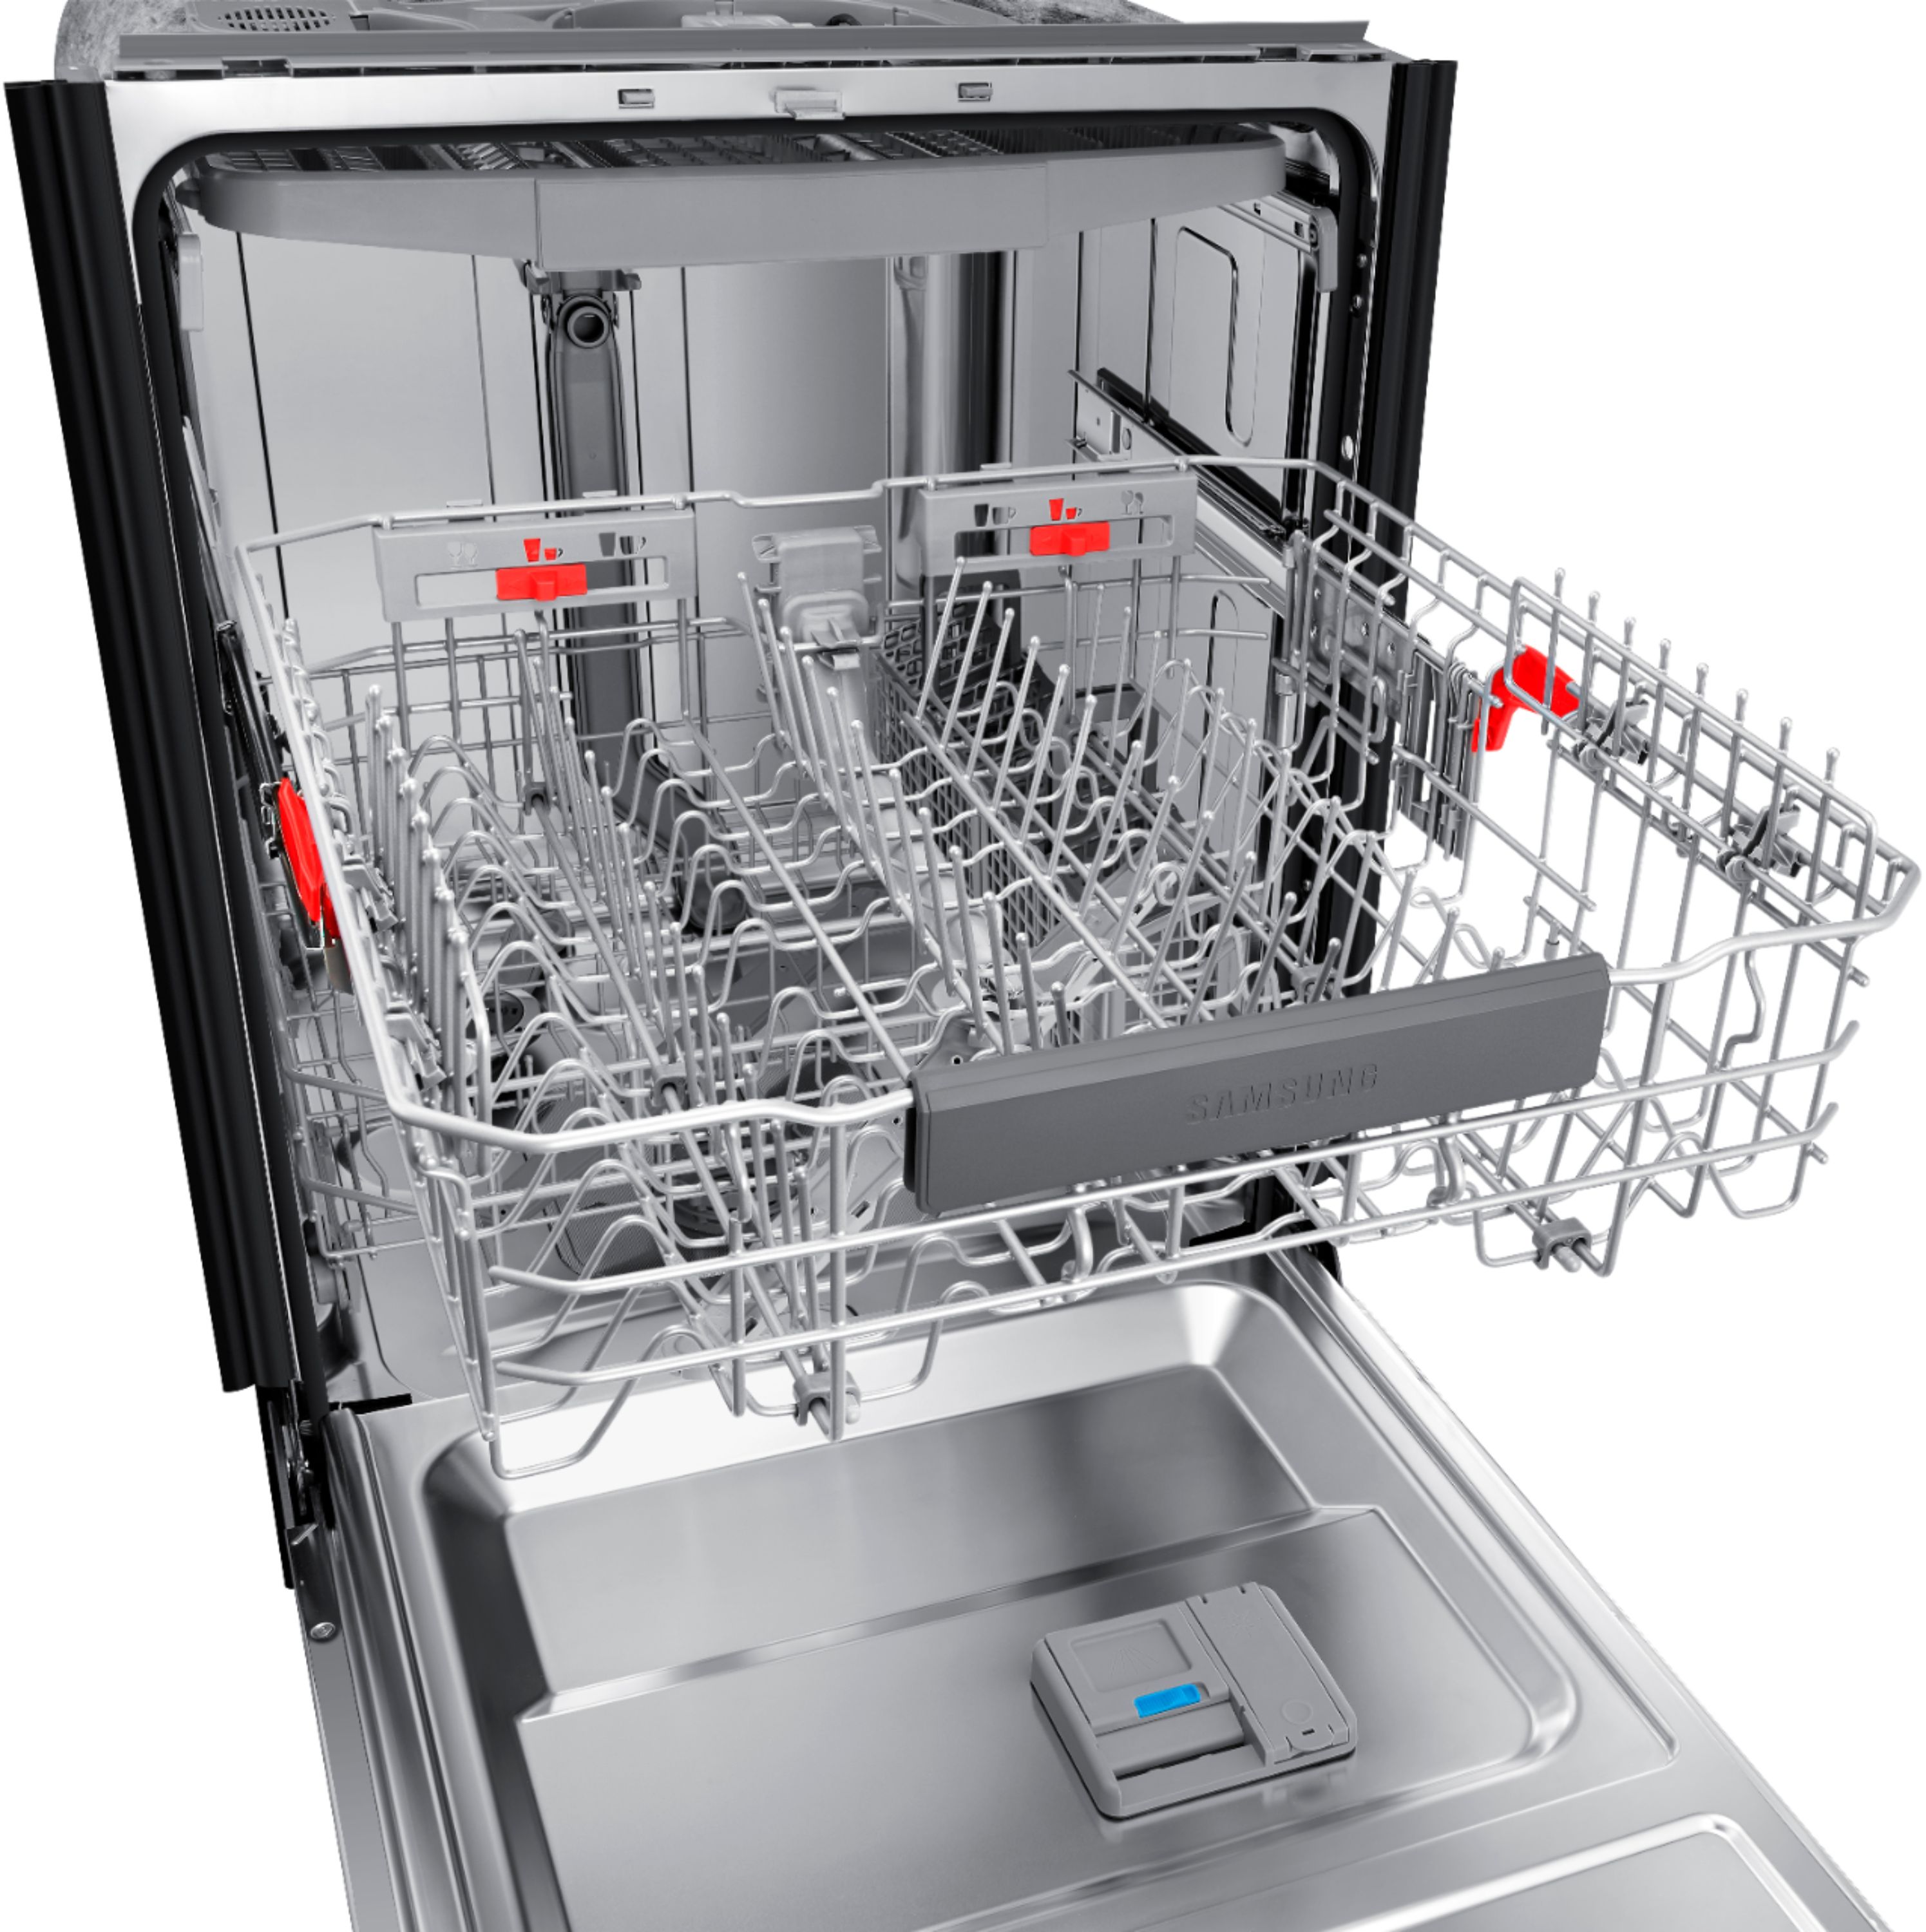 samsung dishwasher prices